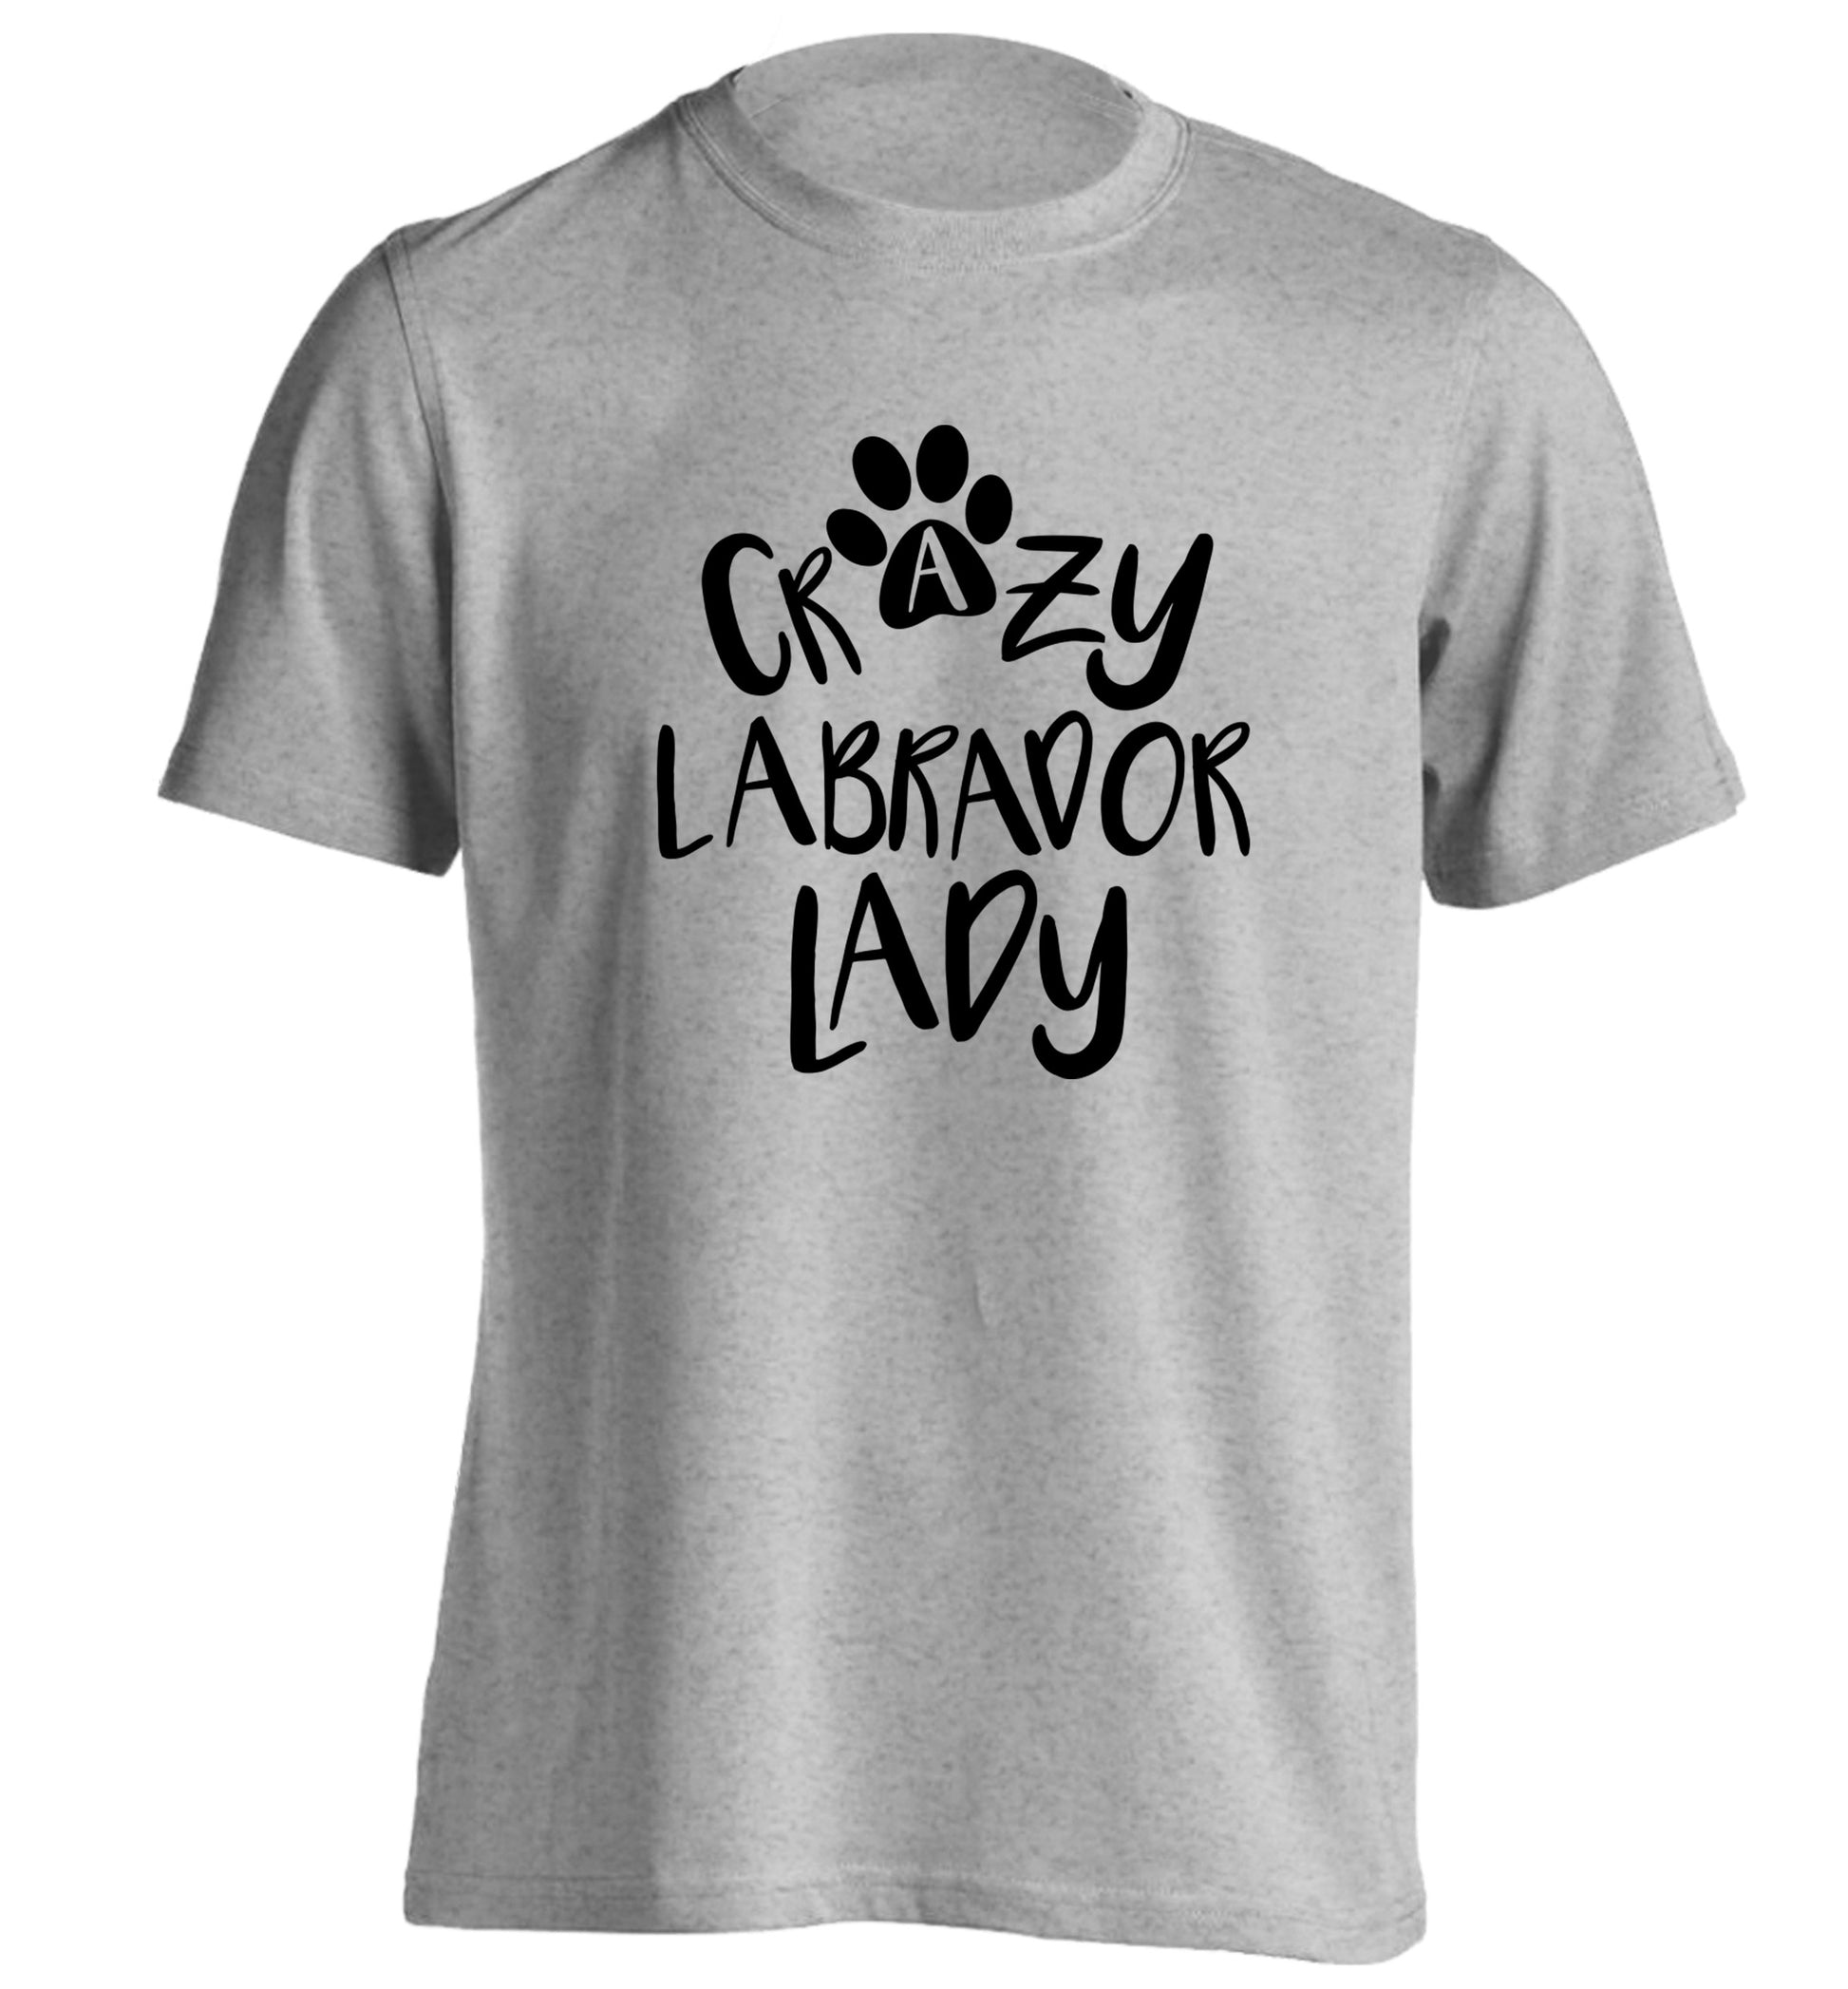 Crazy labrador lady adults unisex grey Tshirt 2XL